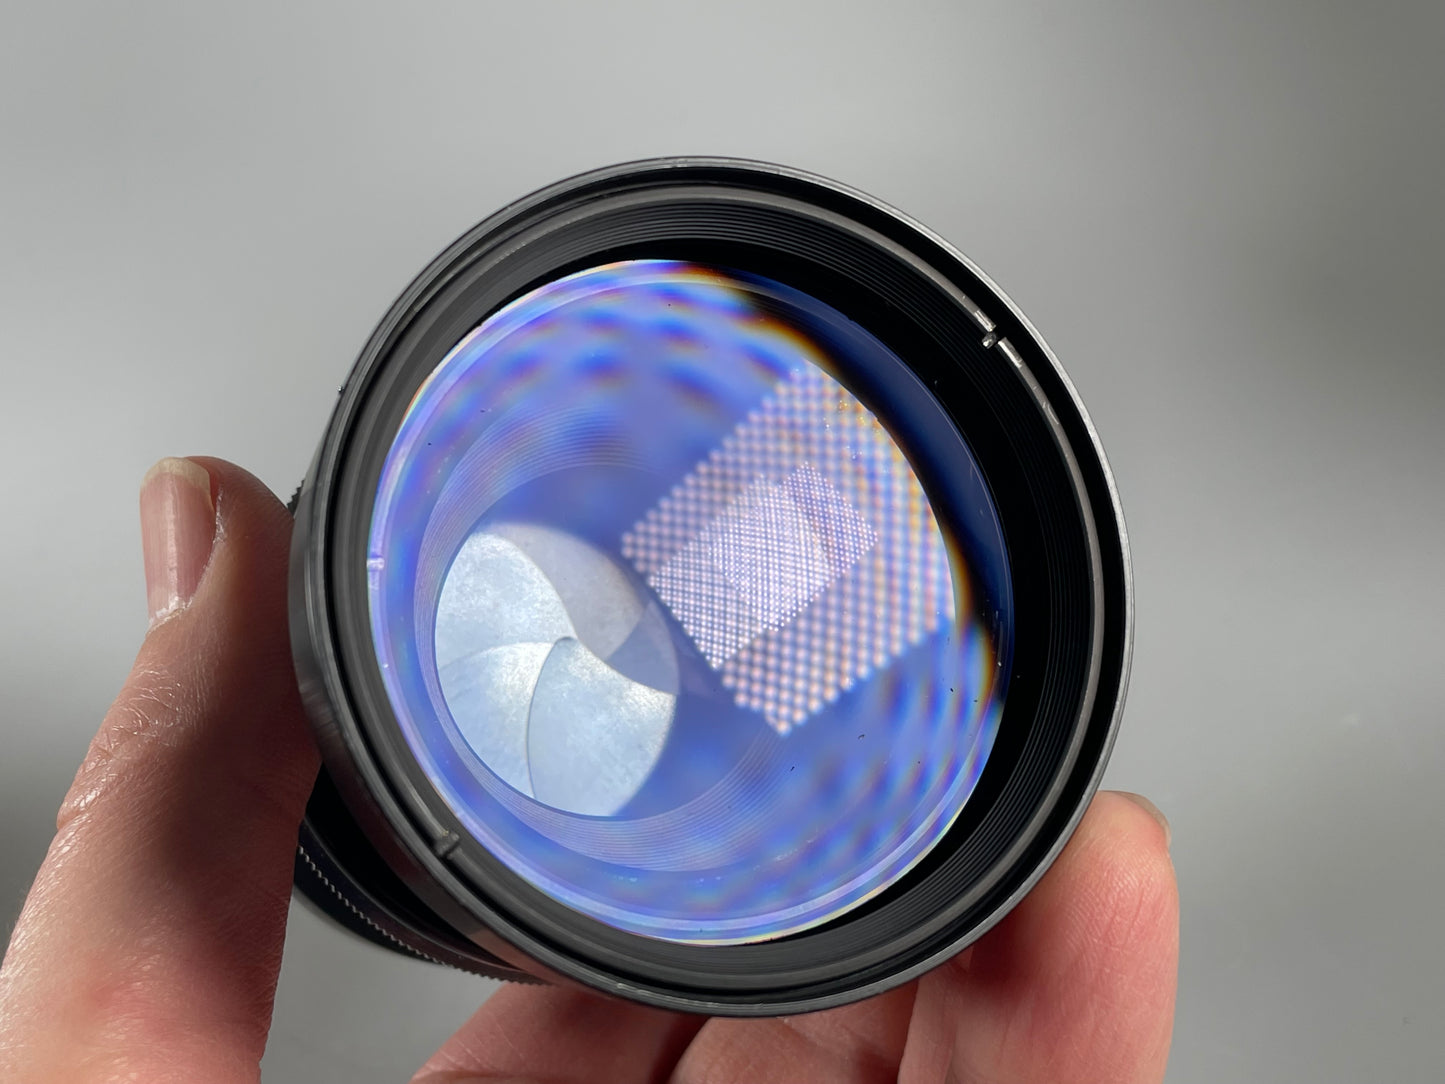 Linhof Select Schneider Tele Arton 250mm f5.6 Lens with matching Cam